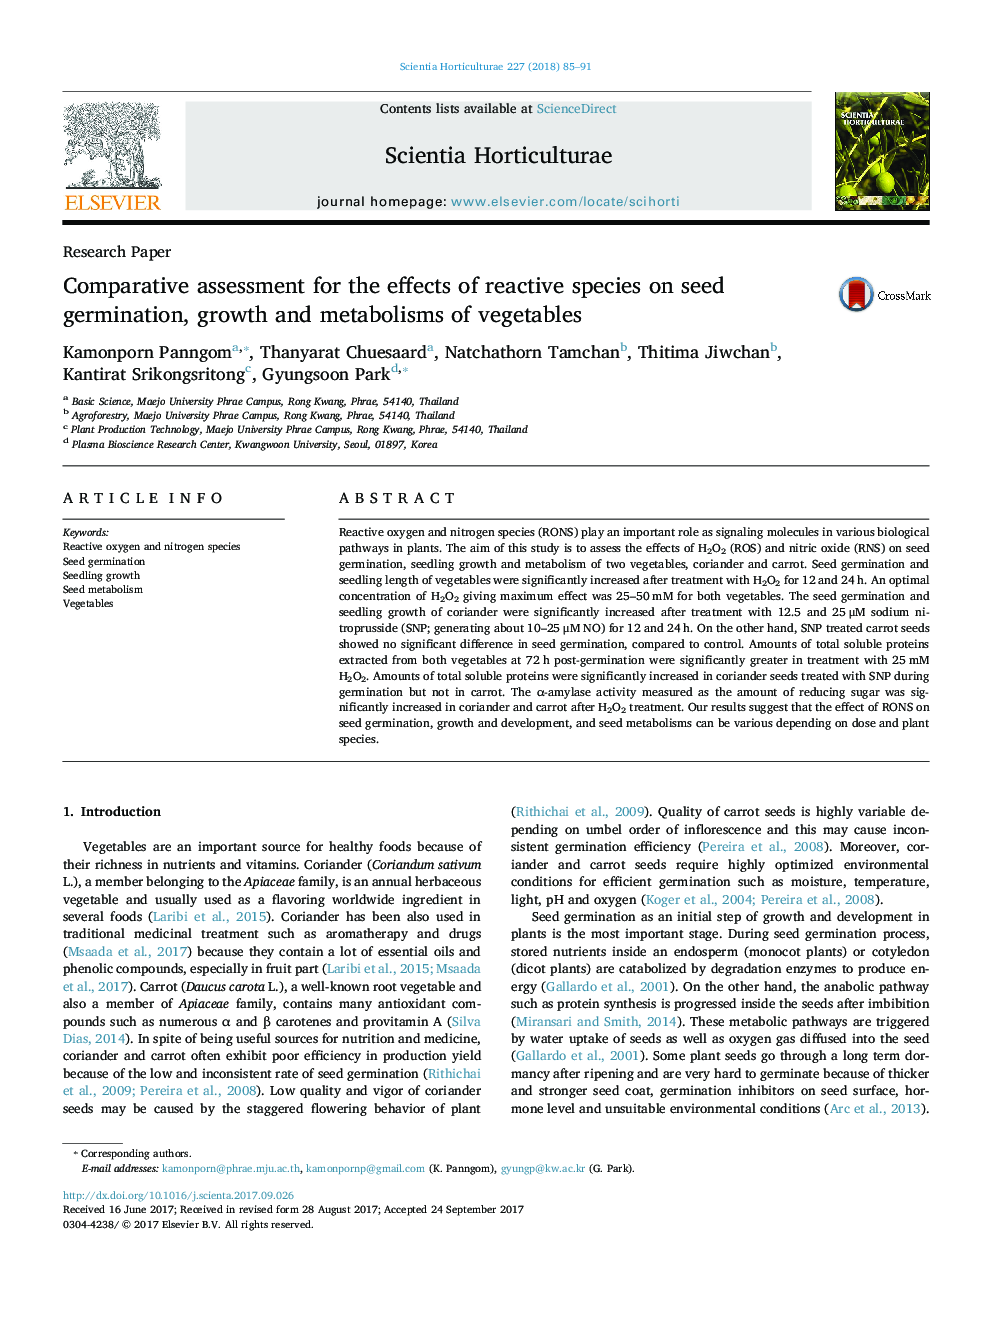 مقاله پژوهشی مقیاس ارزیابی اثرات گونه های واکنشی بر جوانه زنی بذر، رشد و متابولیسم سبزیجات